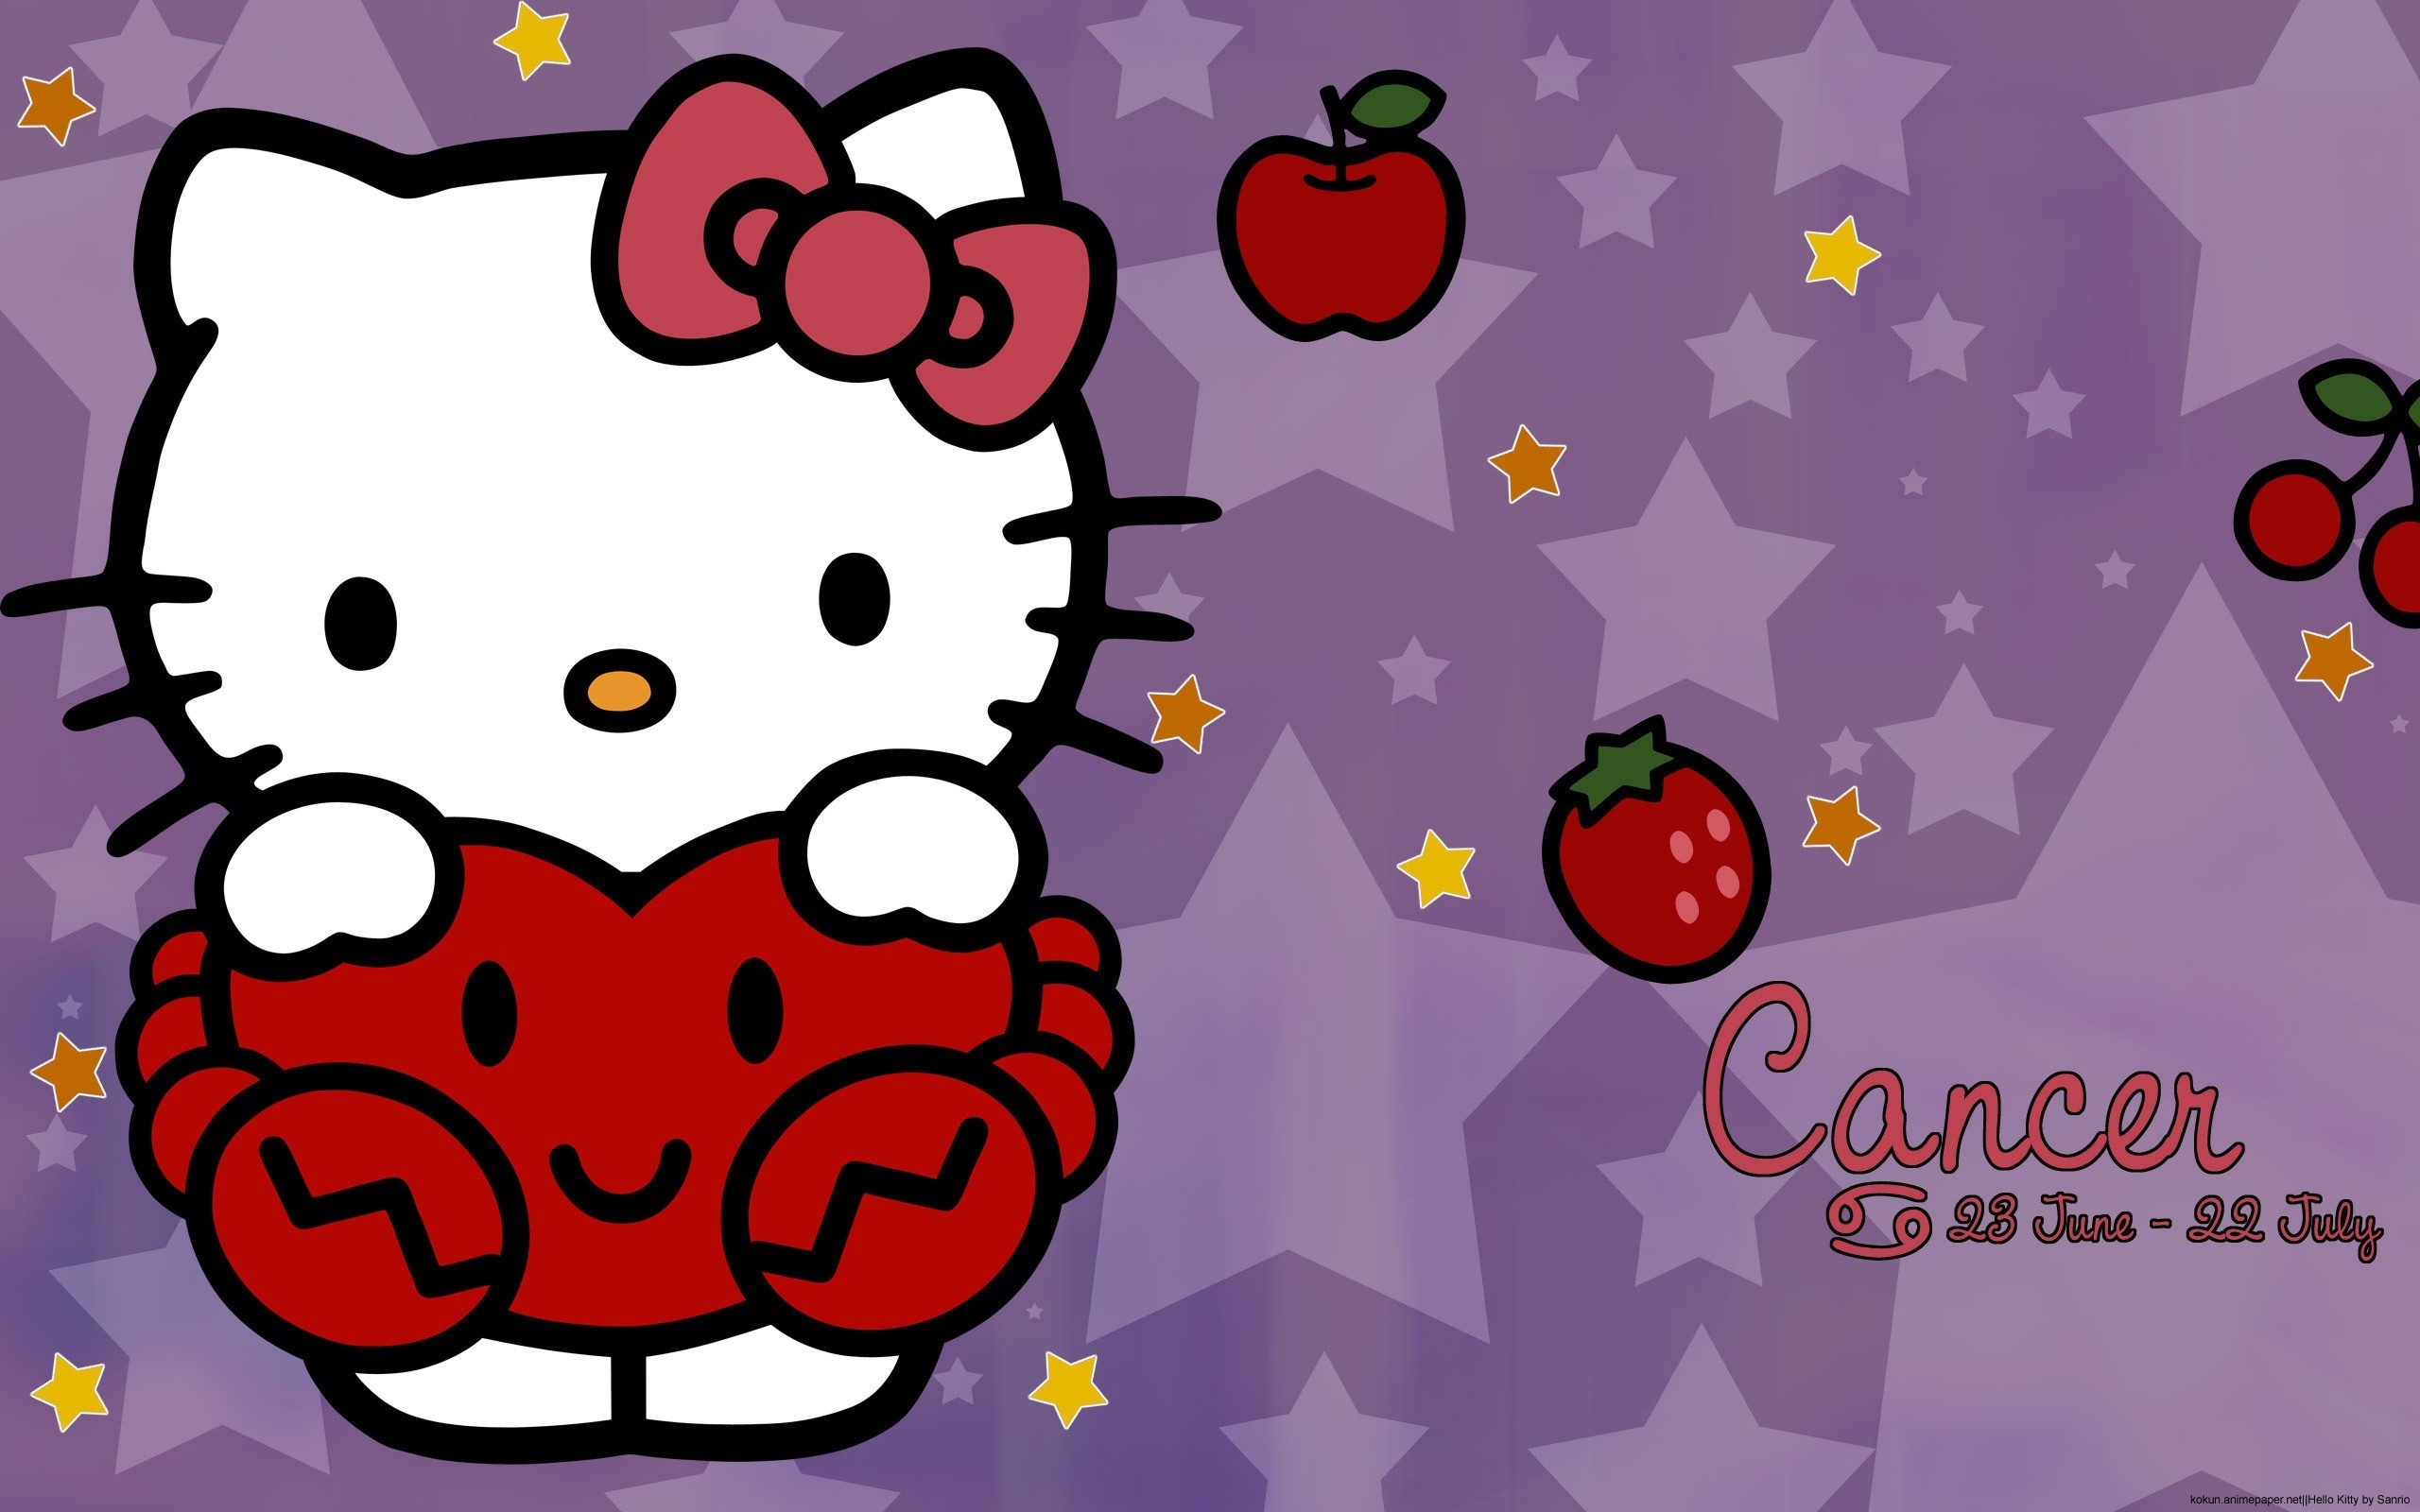 Chào đón các tín đồ của Hello Kitty! Hãy đến và khám phá thế giới đầy màu sắc và ngọt ngào của chú mèo nhỏ dễ thương này. Đảm bảo bạn sẽ có một trải nghiệm đầy vui vẻ và bất ngờ khi xem ảnh liên quan đến Hello Kitty.